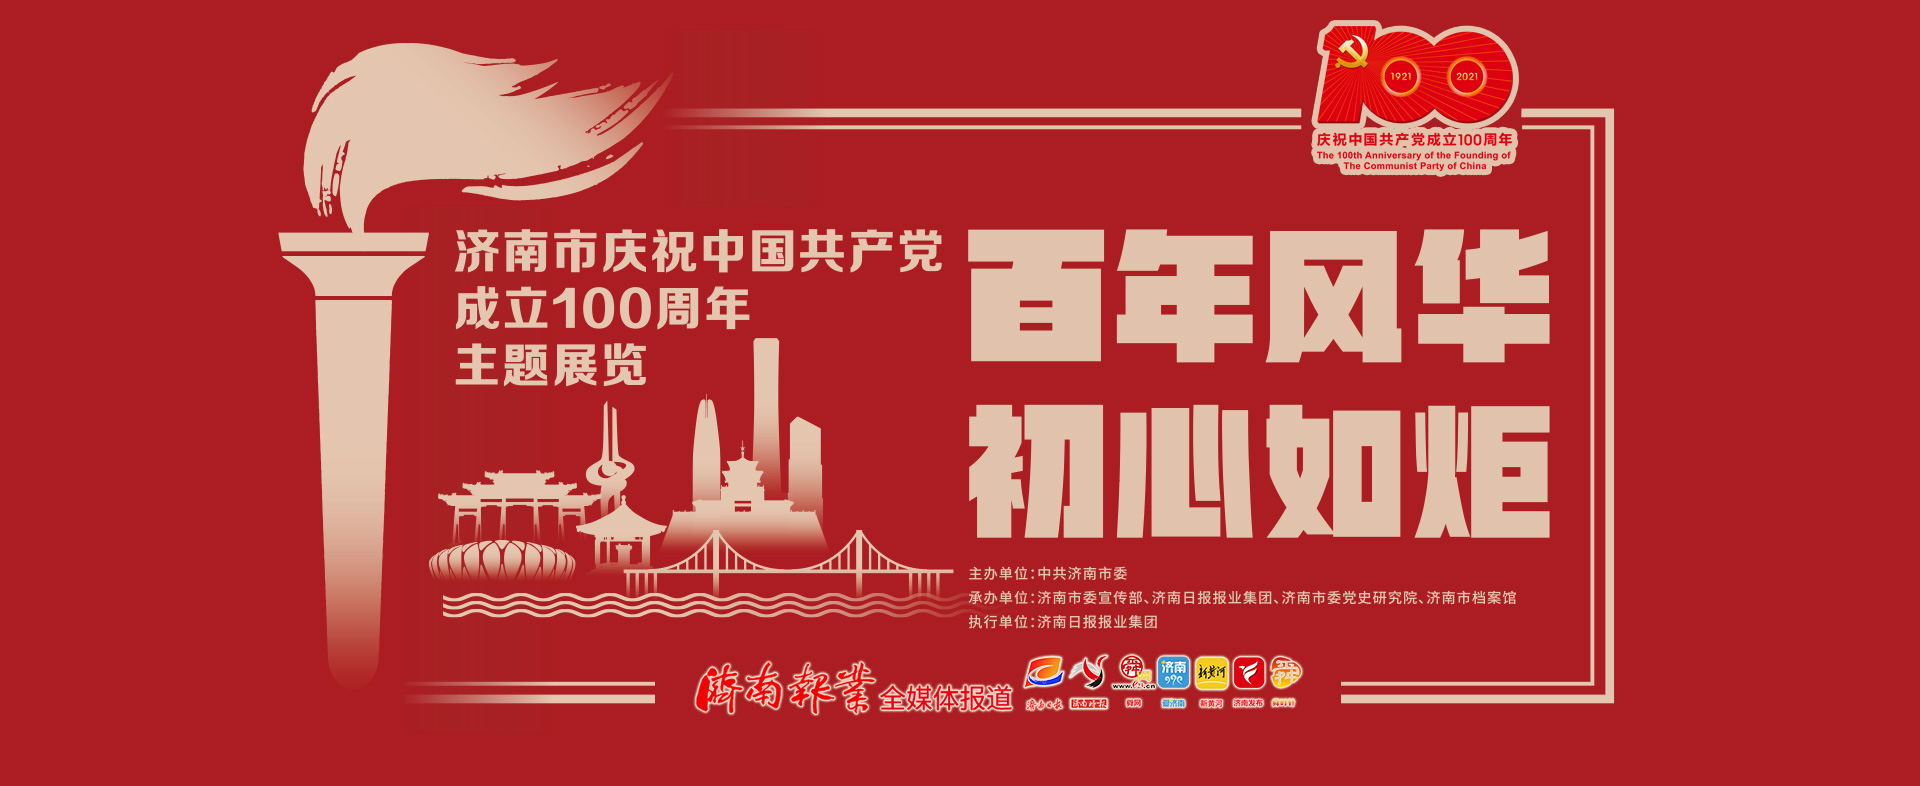 庆祝中国共产党成立100周年主题展览征集展品300余件